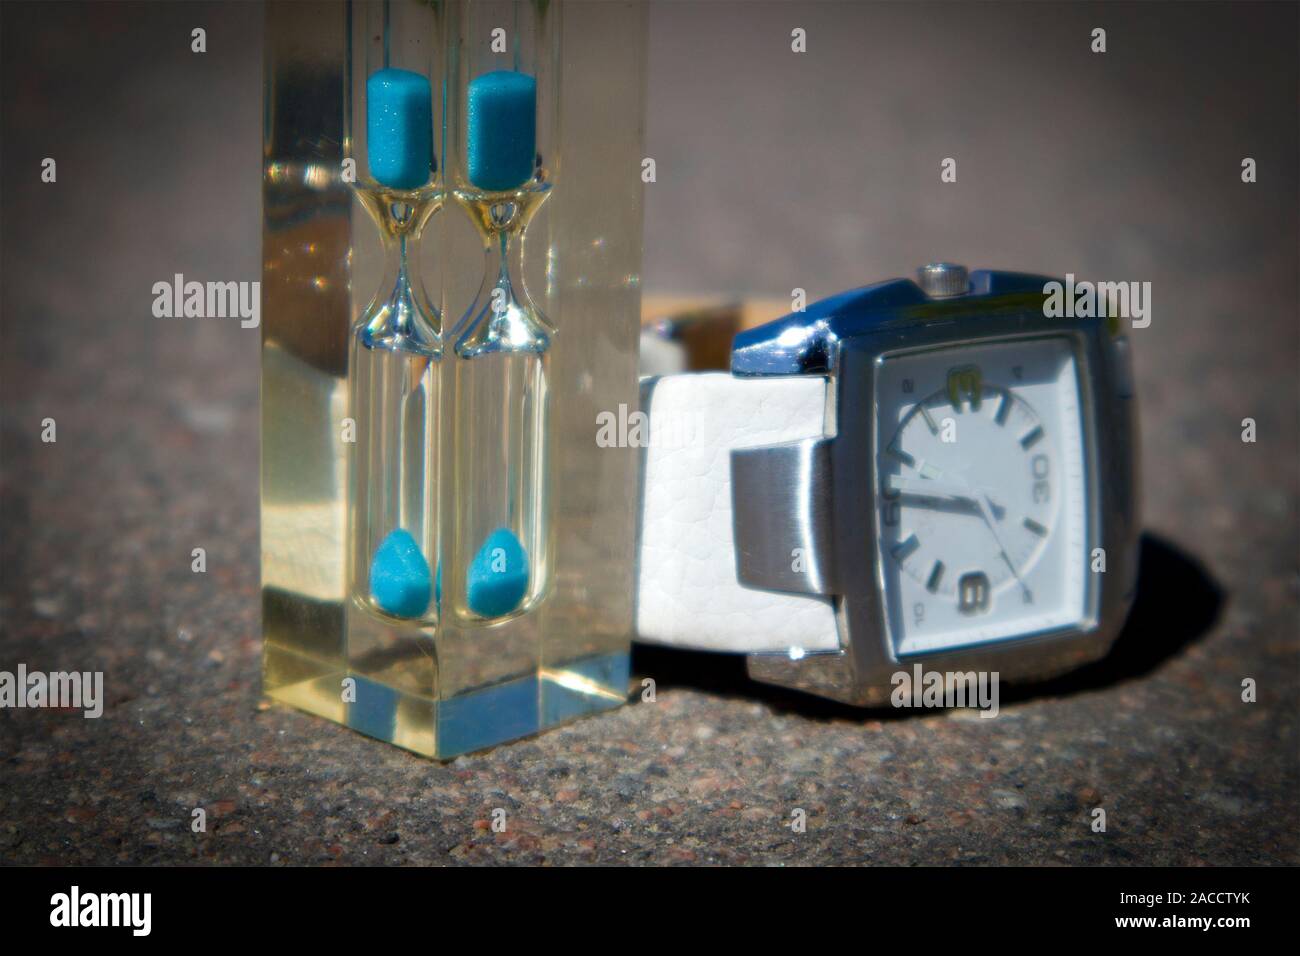 Trasparente clessidra con sabbia blu e guardare con orologio bianco faccia contro di asfalto, il concetto di tempo Foto Stock